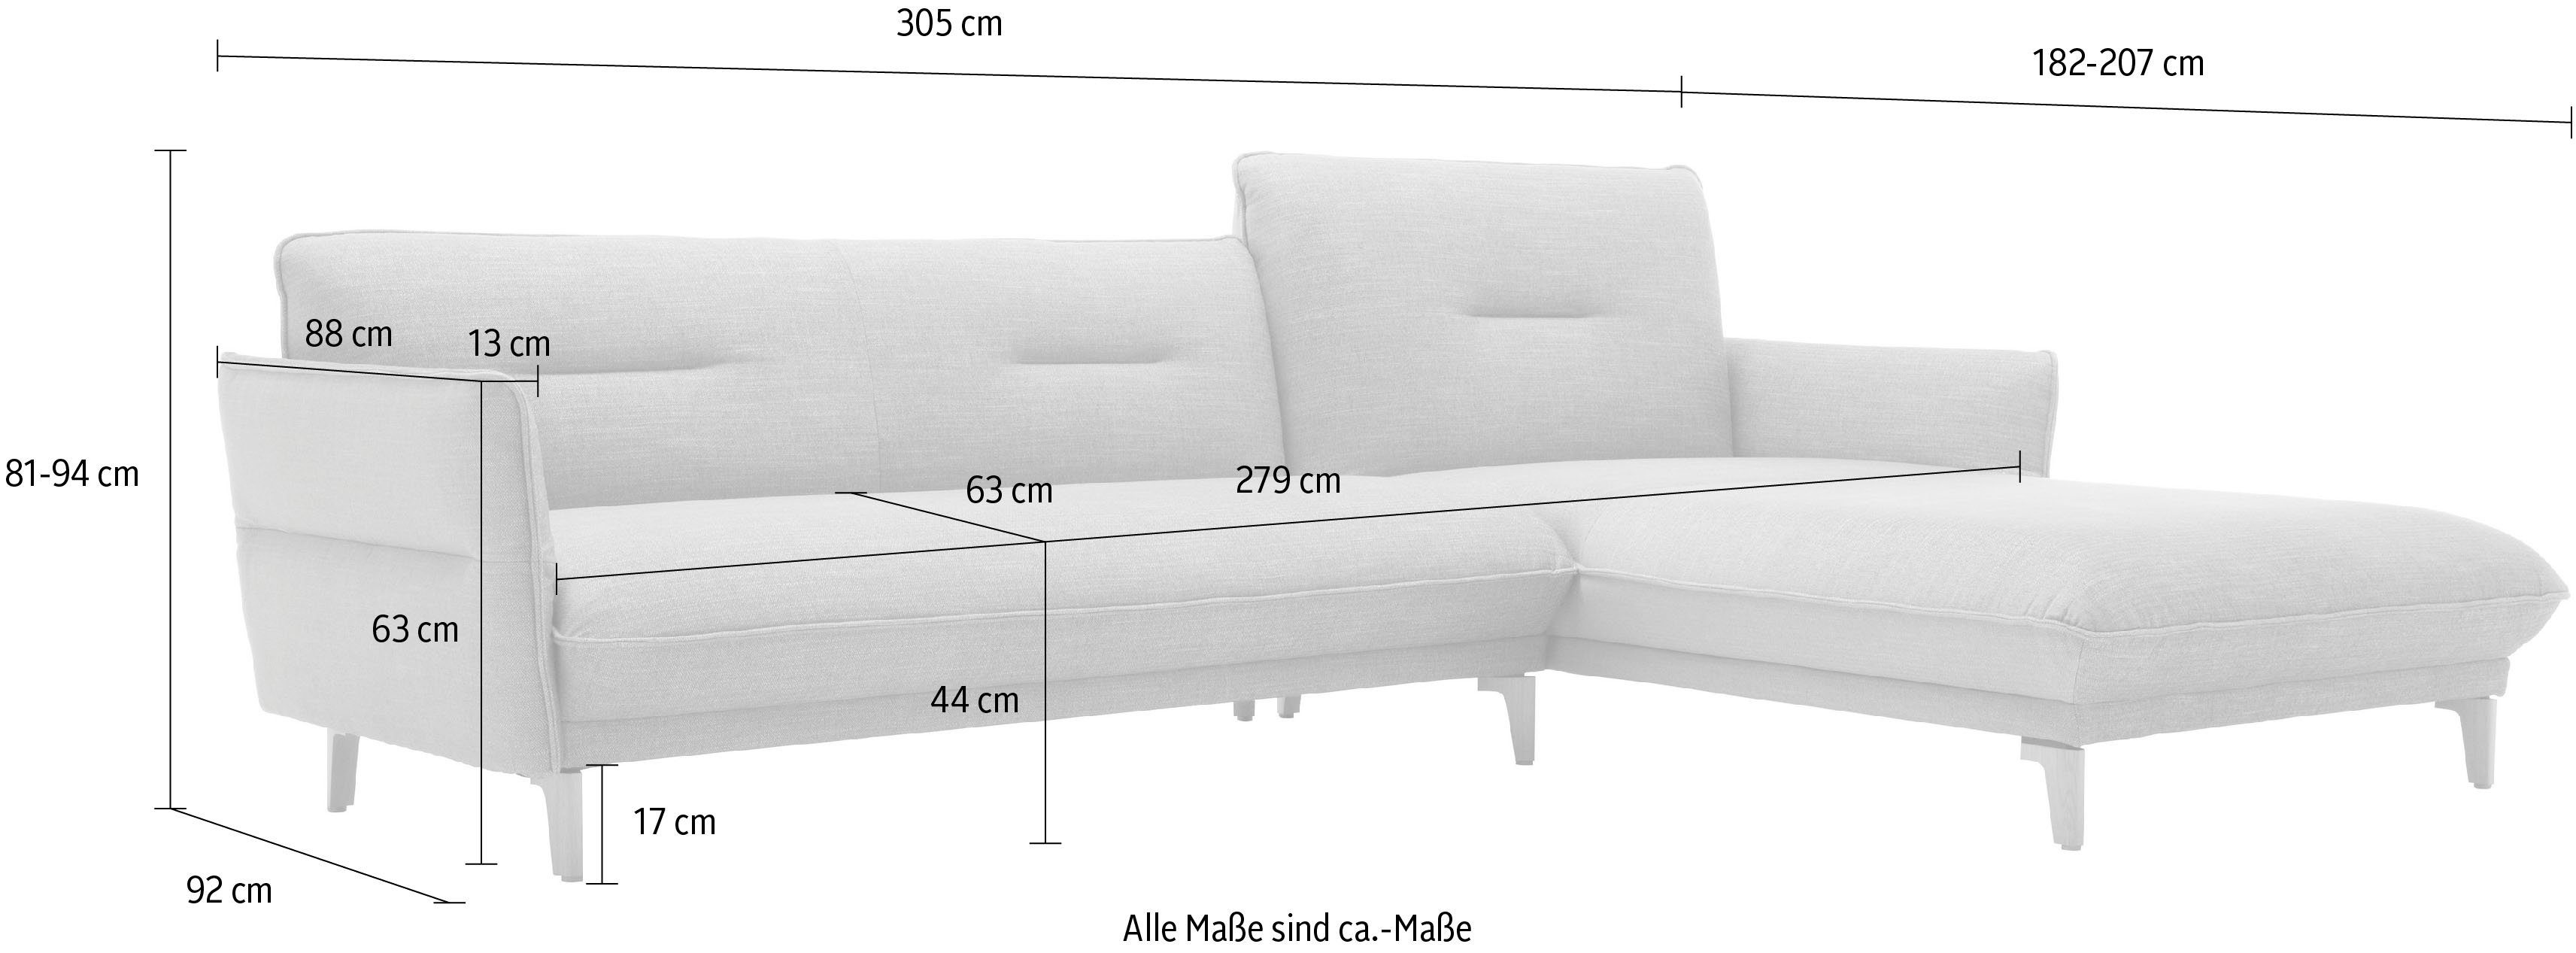 hülsta sofa mit Ecksofa 305 Neigefunktion, 068-30 Breite steingrau Rücken hoher Recamiere cm hs.430